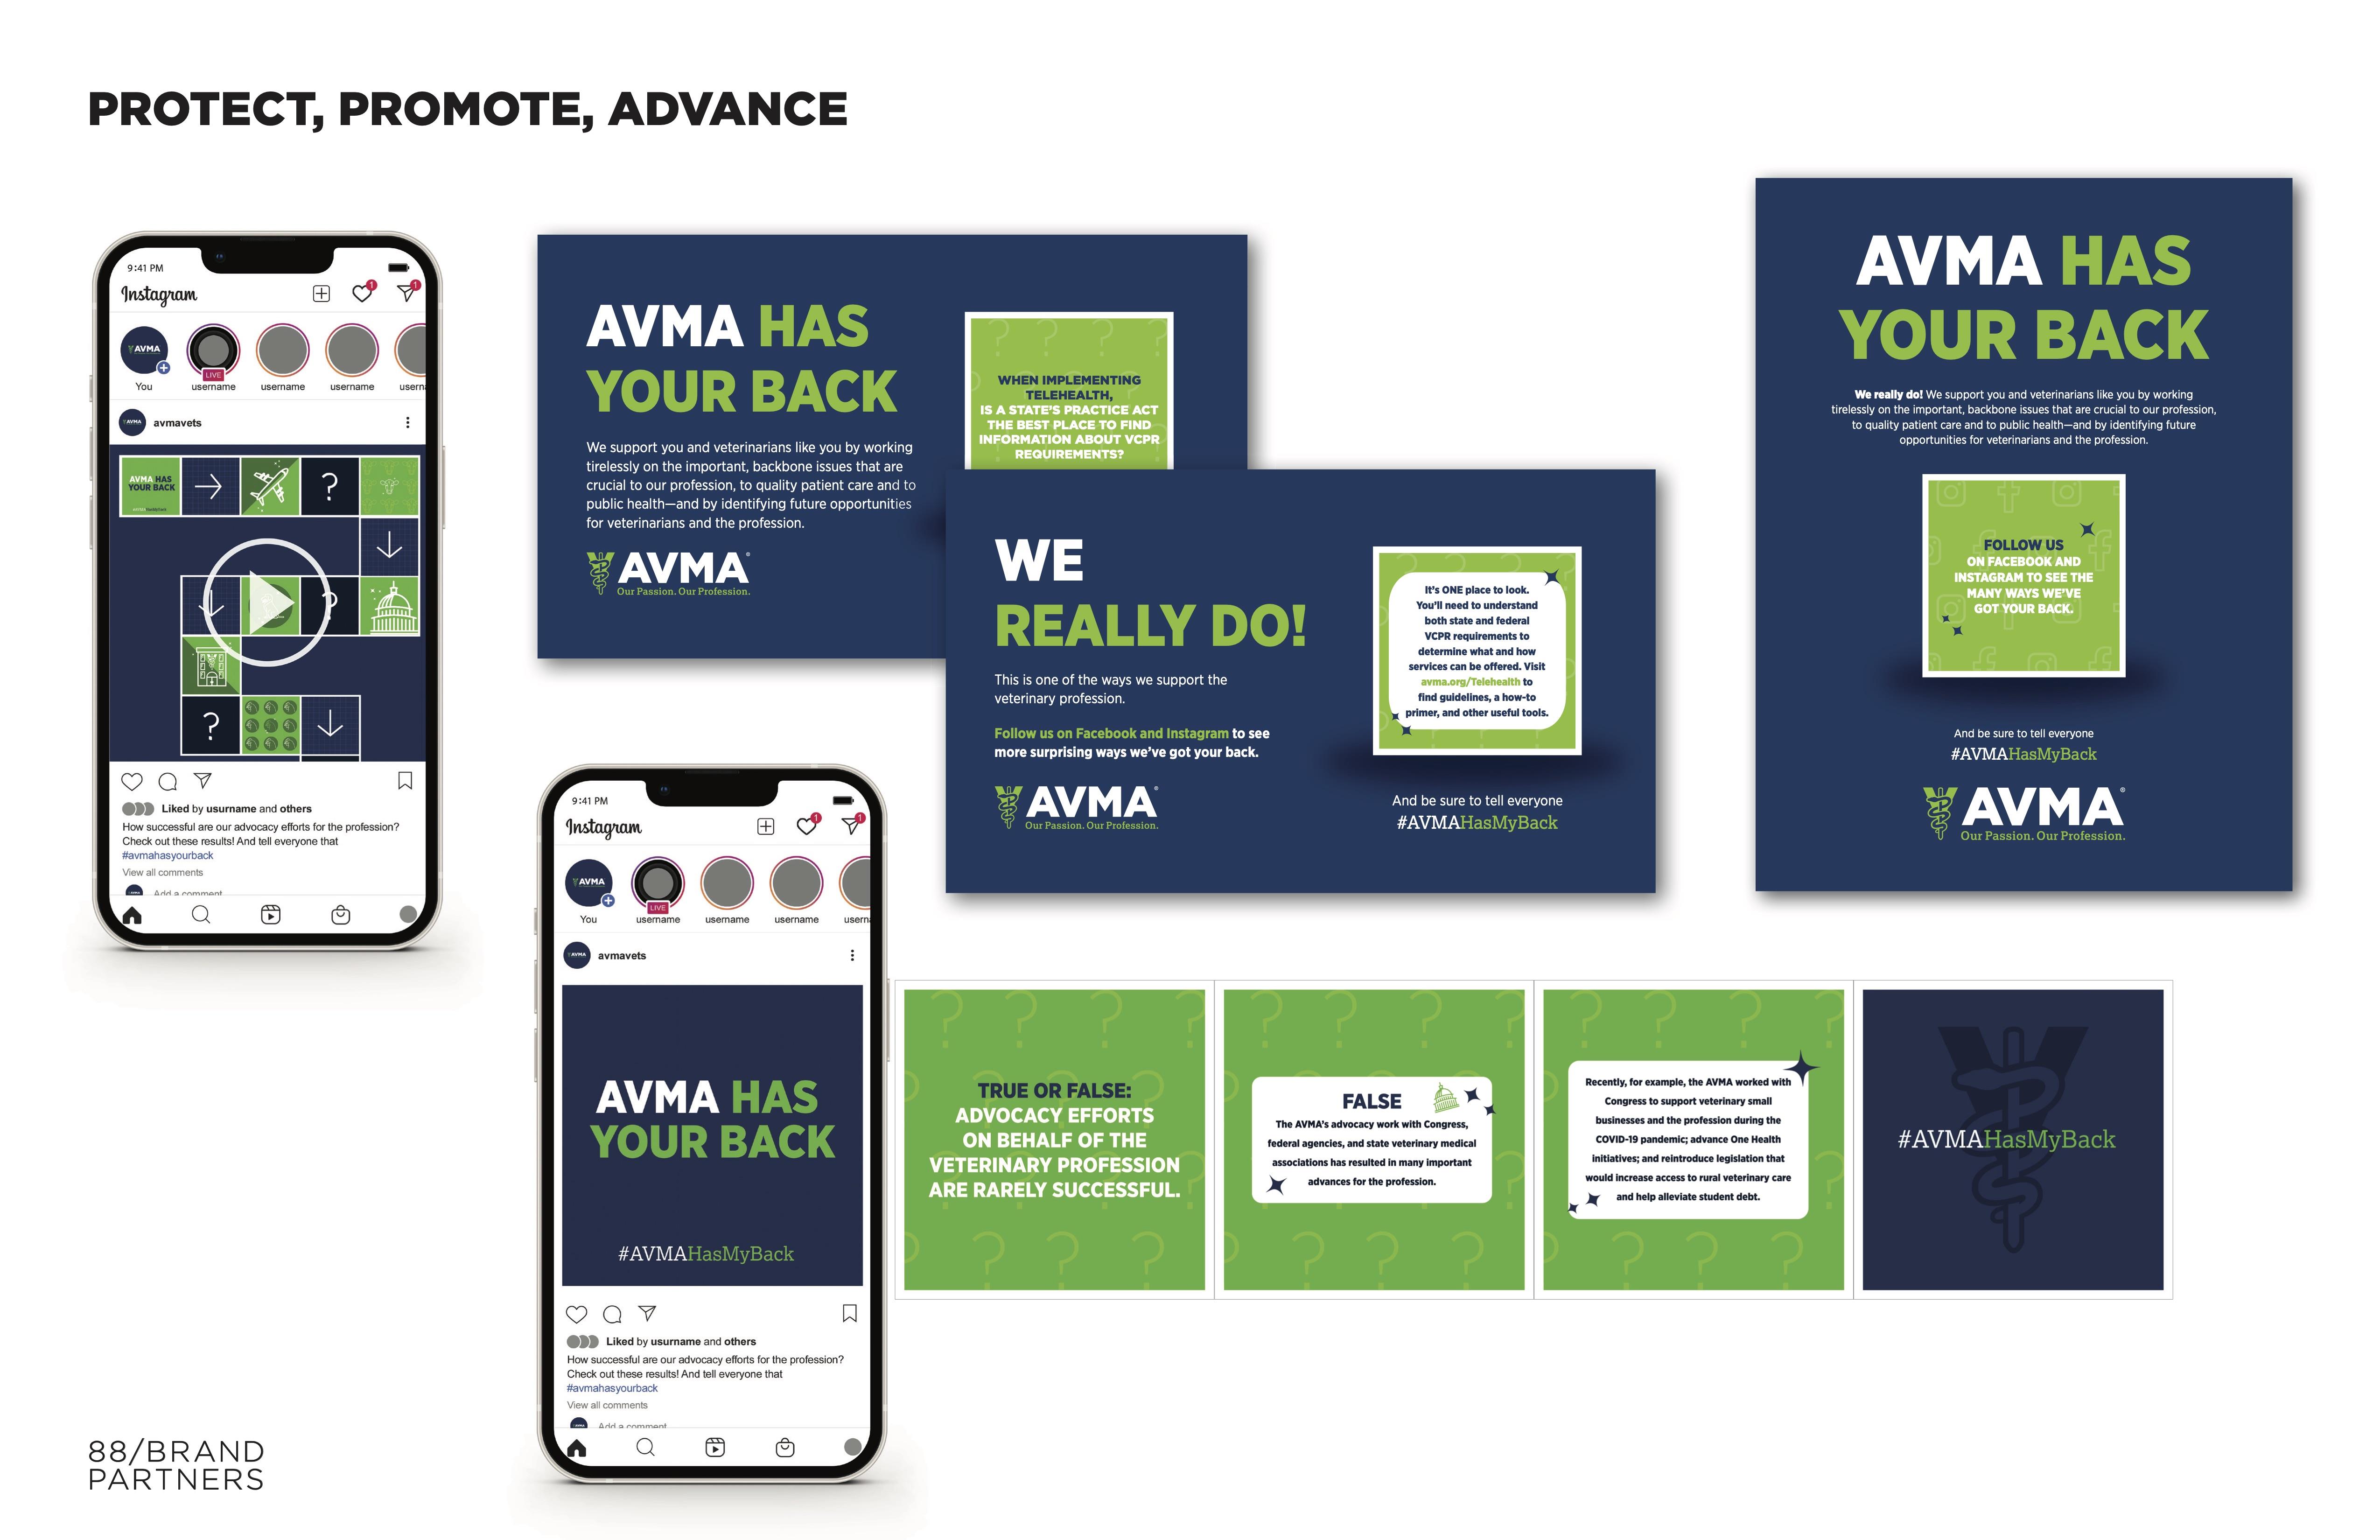 AVMA Protect, Promote, Advance Campaign